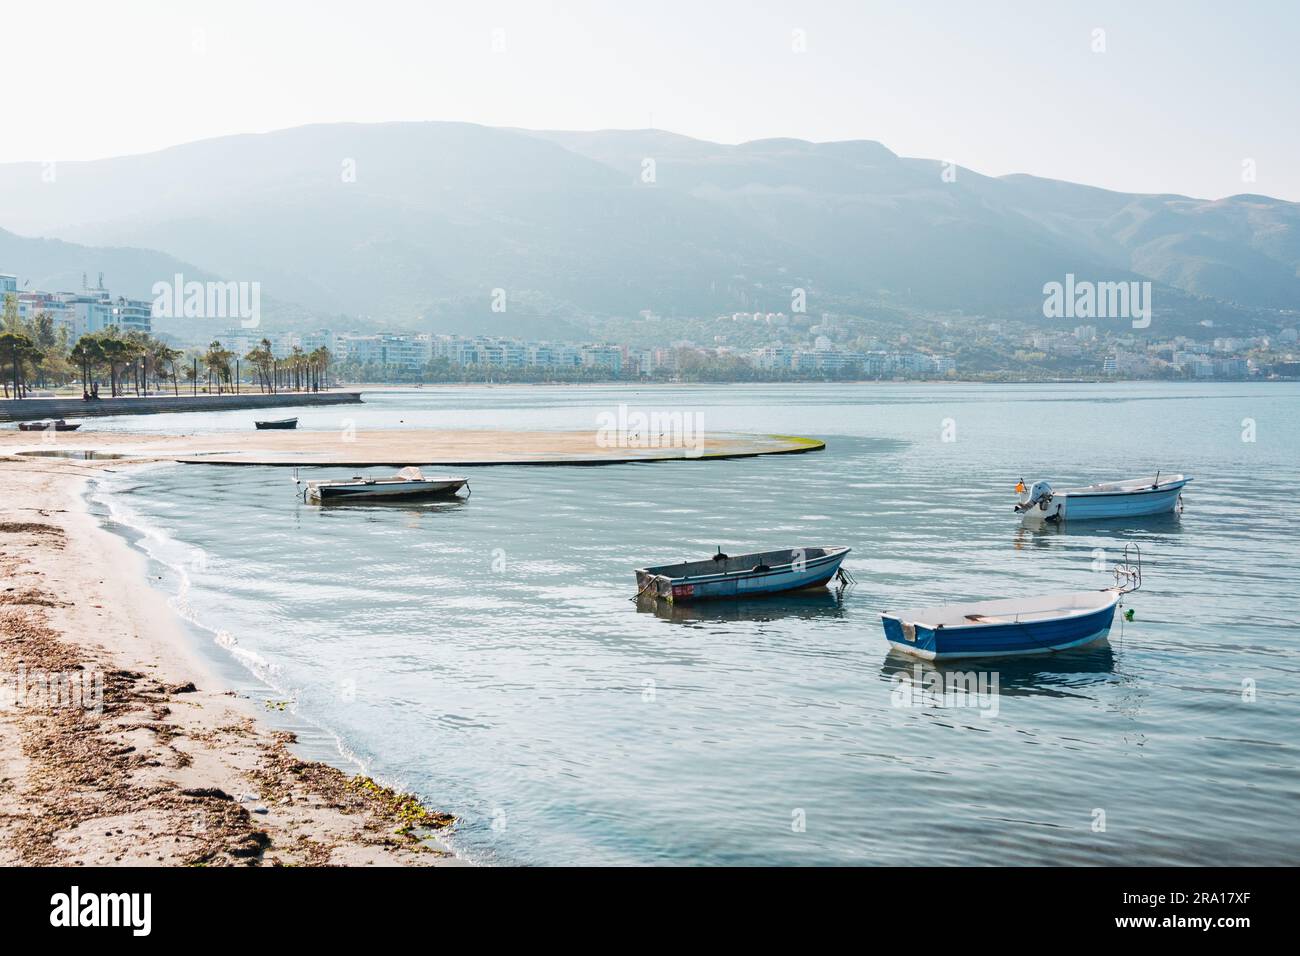 Piccole barche nella baia nella città costiera di Vlorë, nell'Albania meridionale Foto Stock